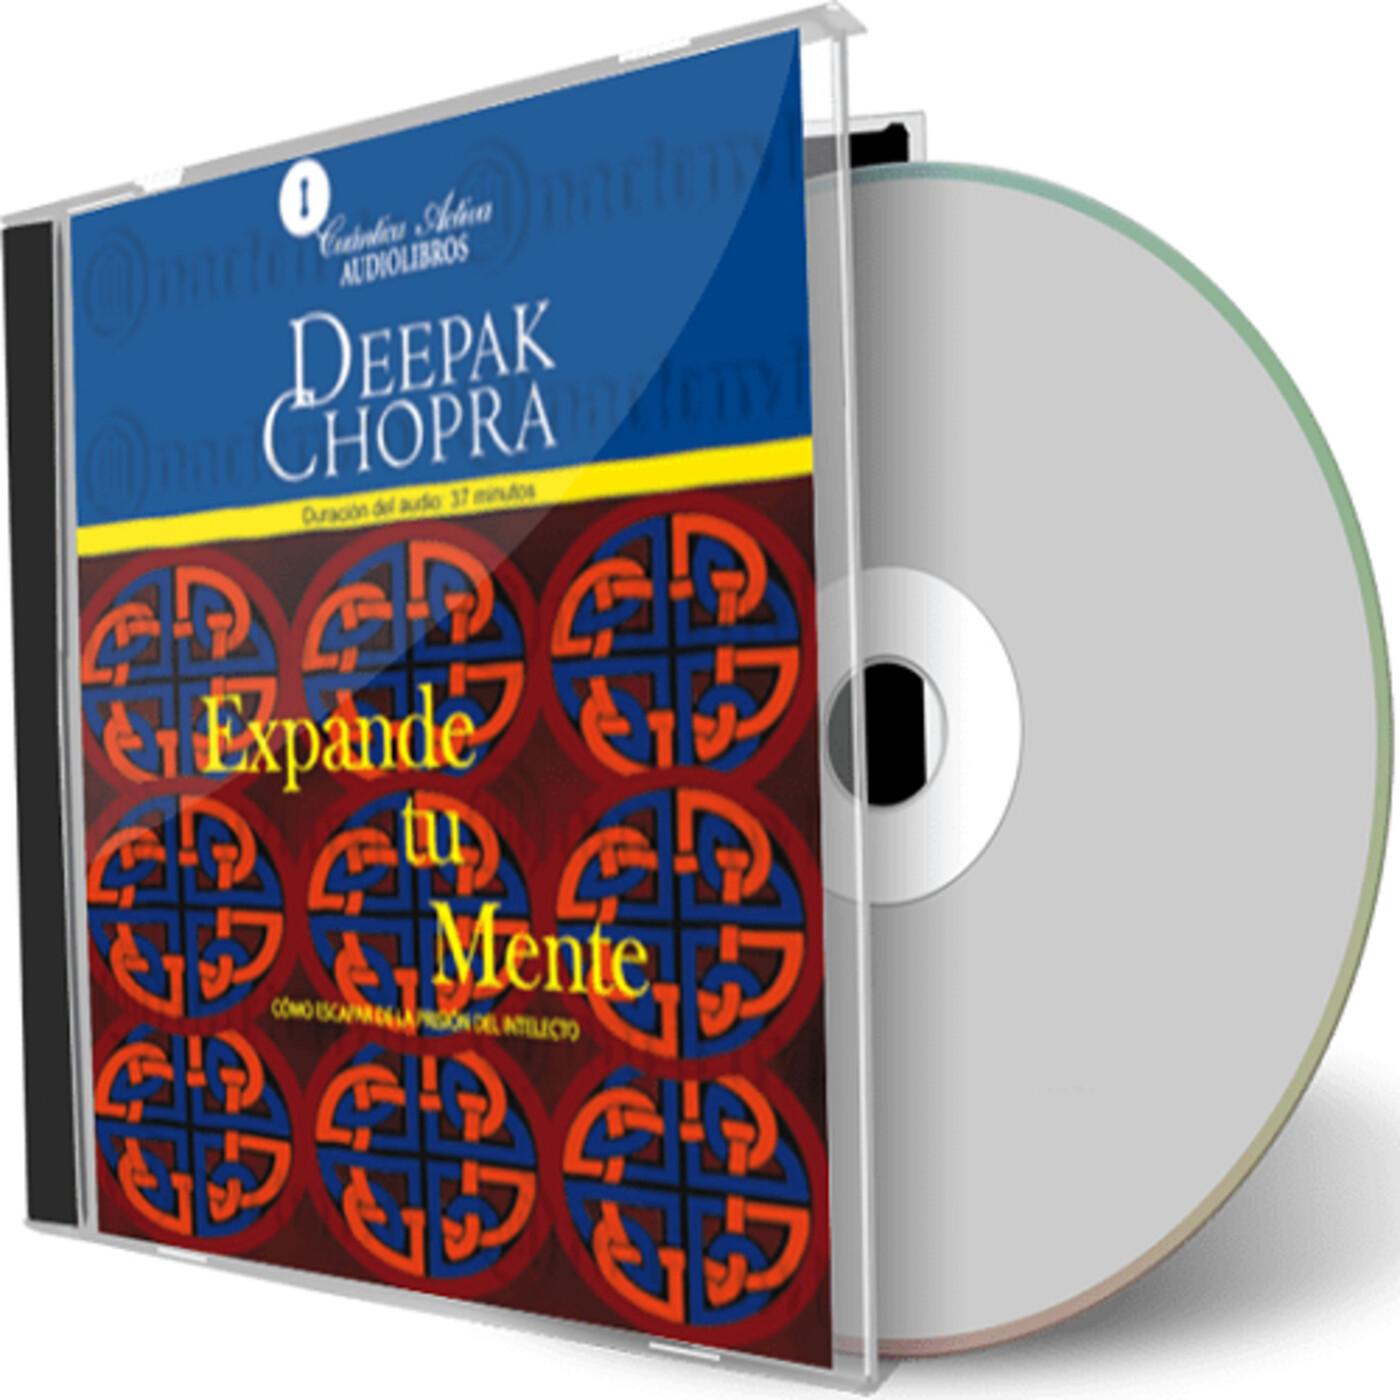 Deepak chopra mp3